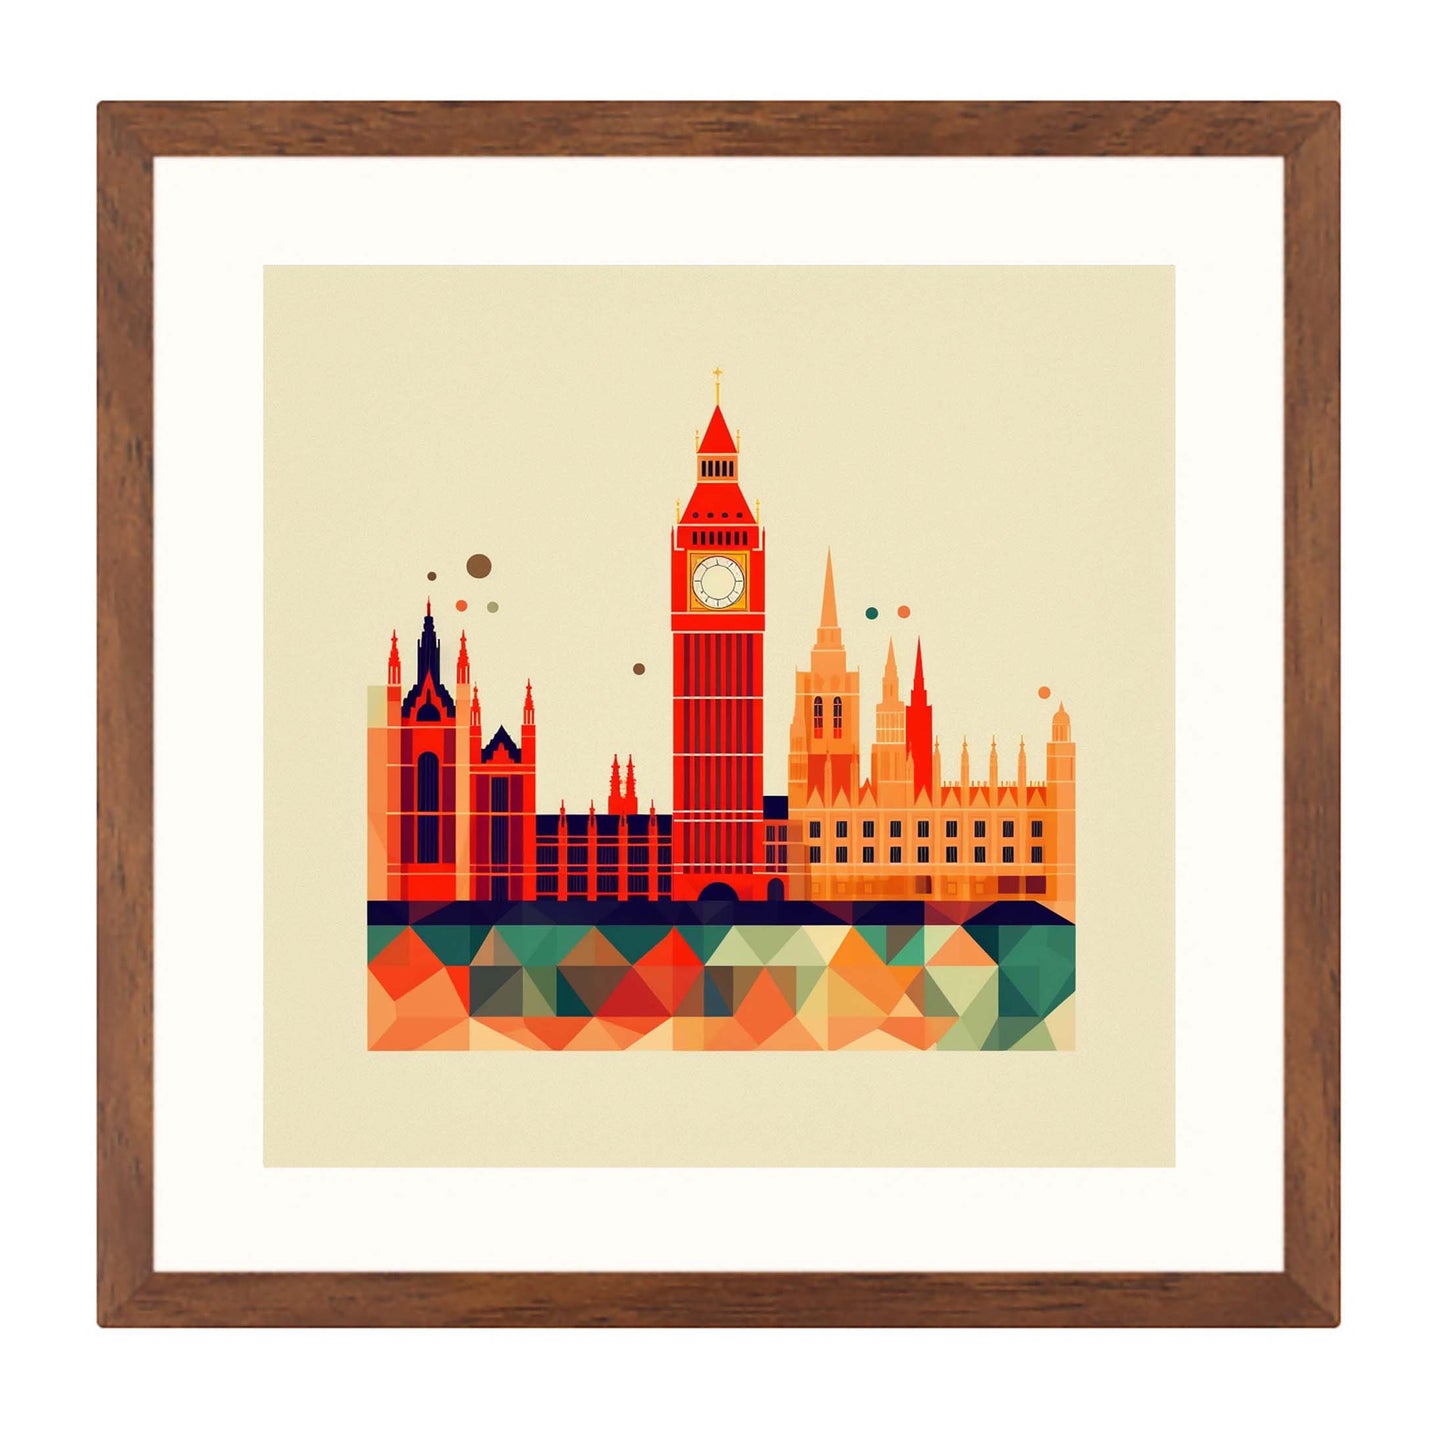 London Westminster Palace - Wandbild in der Stilrichtung des Minimalismus